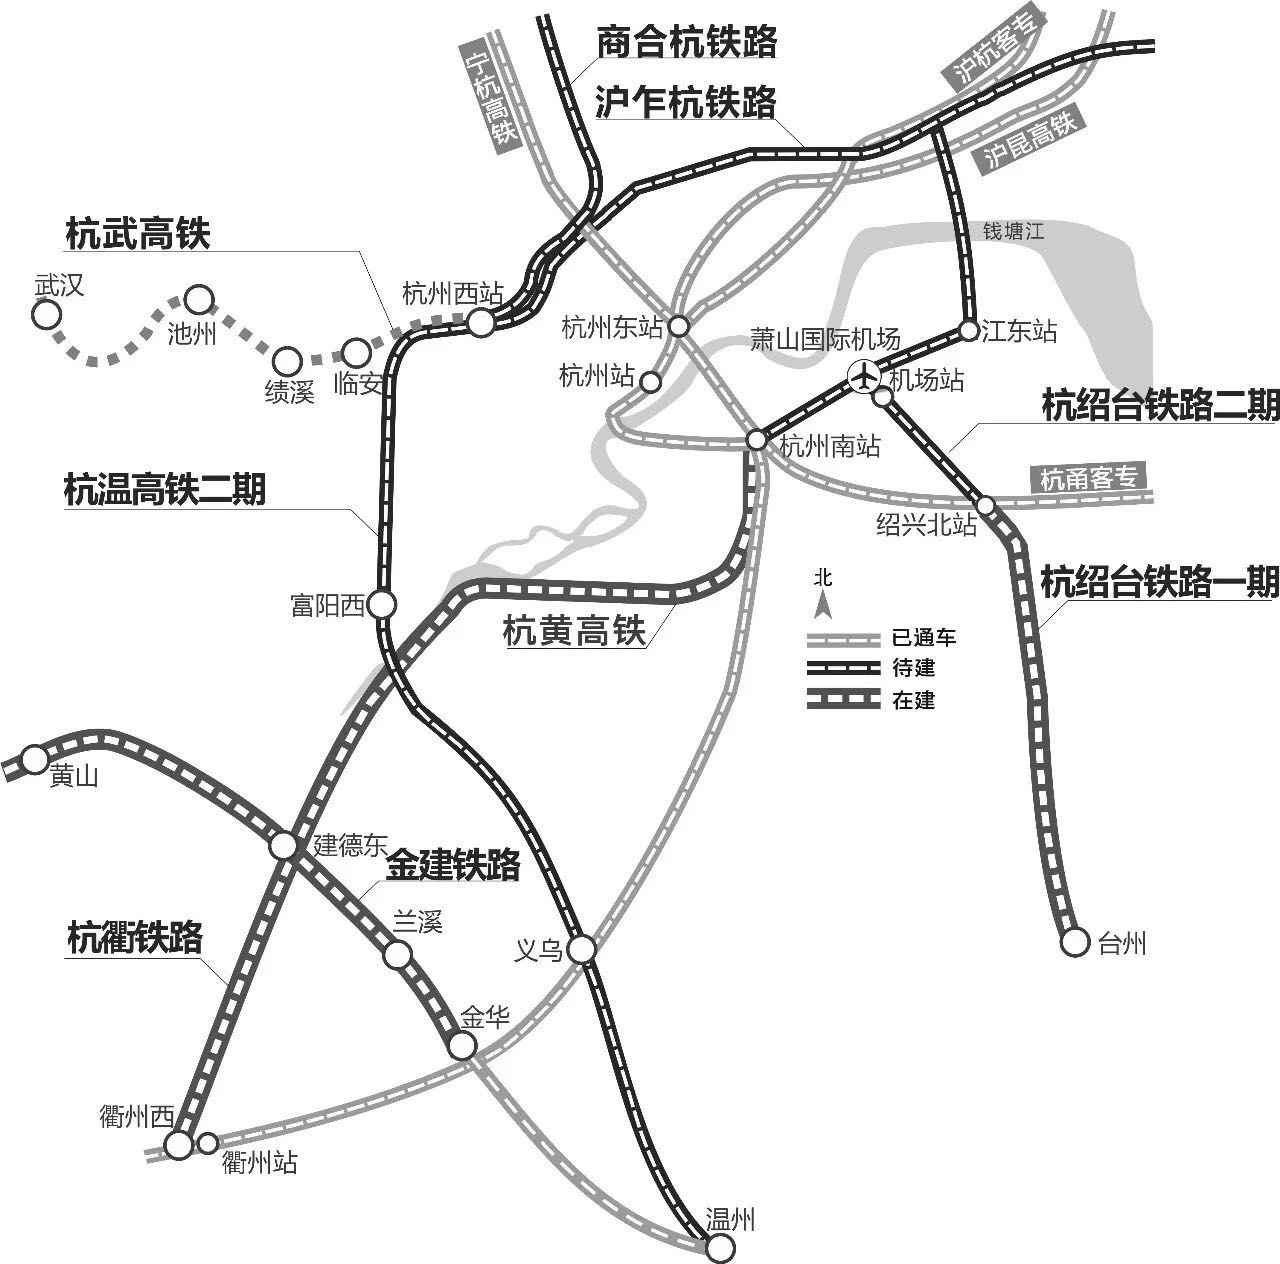 根据规划,杭州铁路西站用地面积50至100公顷,是一座铁路,公路,航空